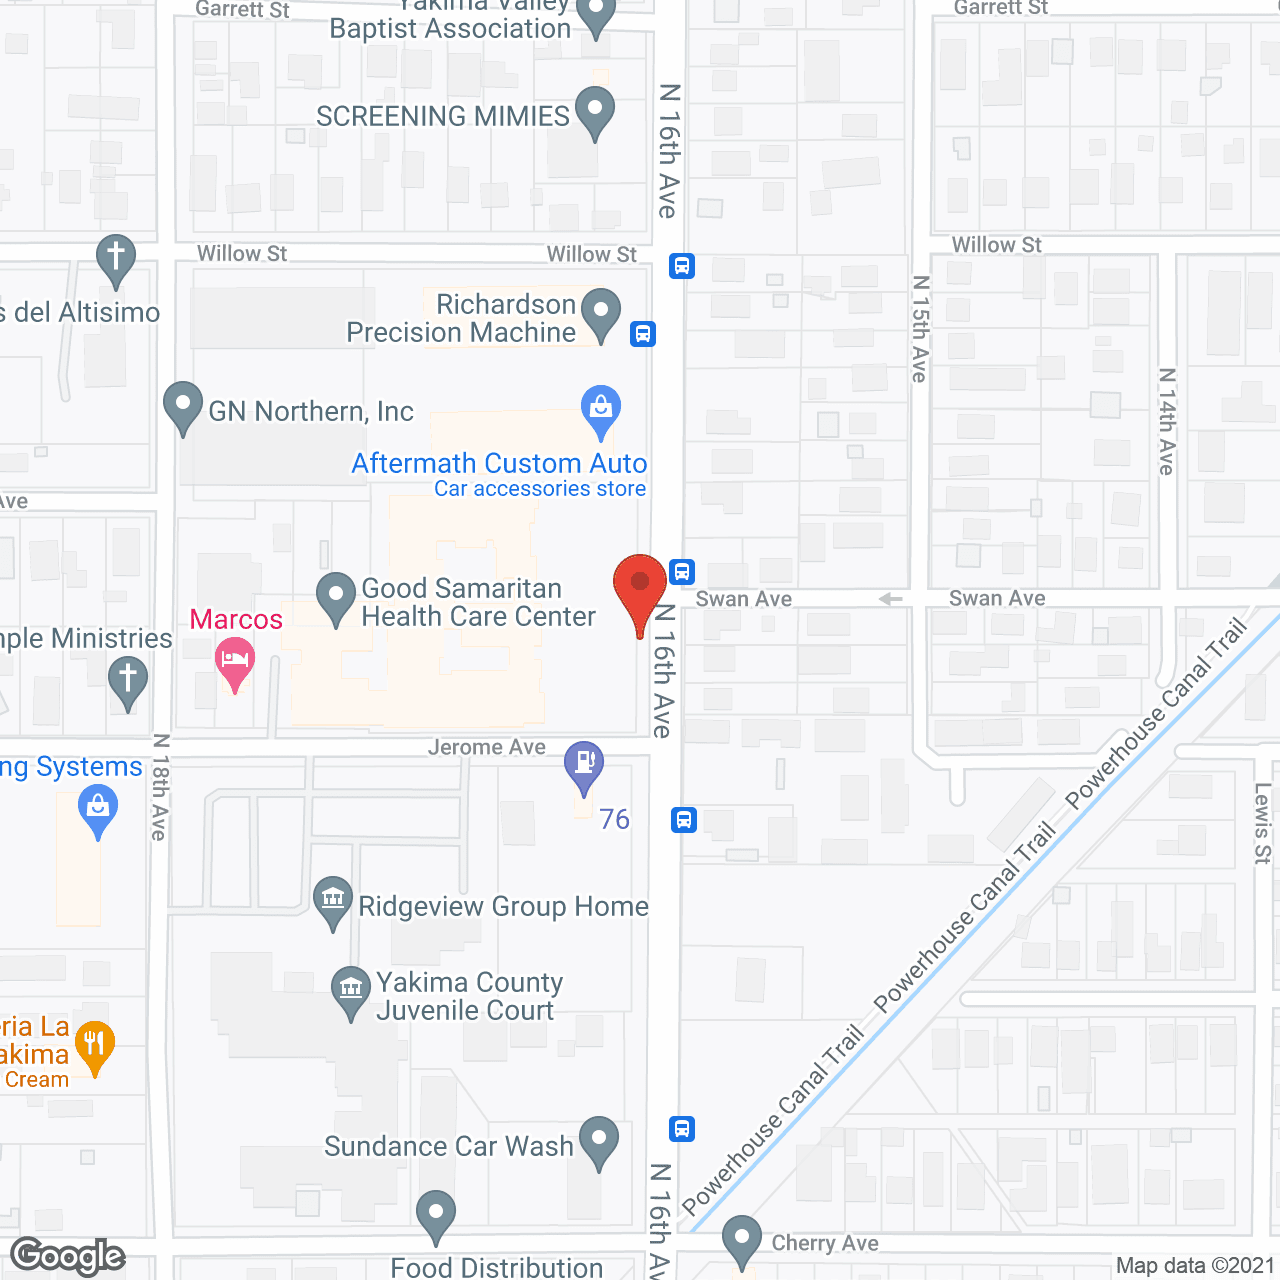 Samaritan House in google map